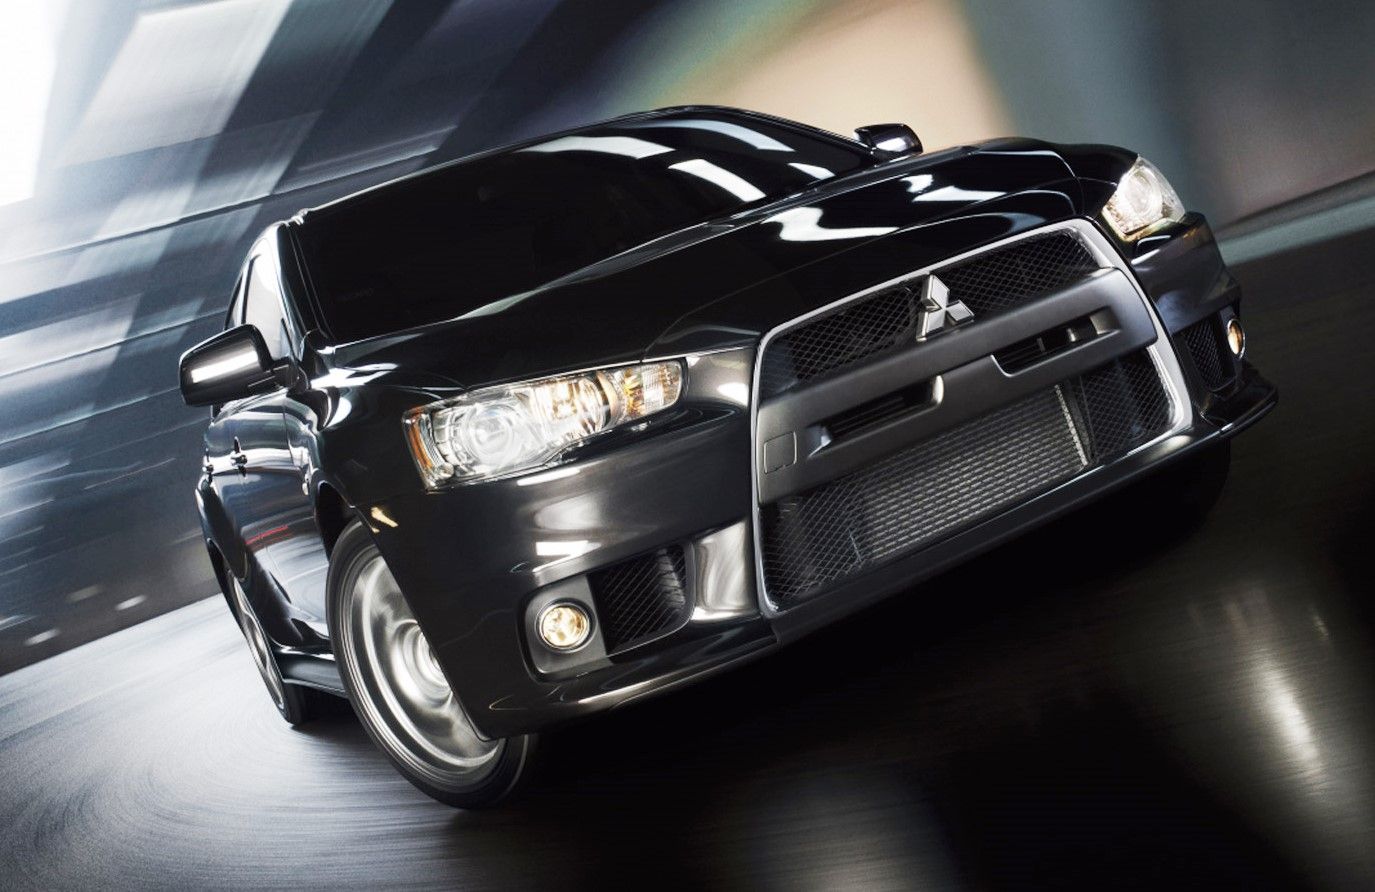 2014 Mitsubishi Lancer Evolution - Driven